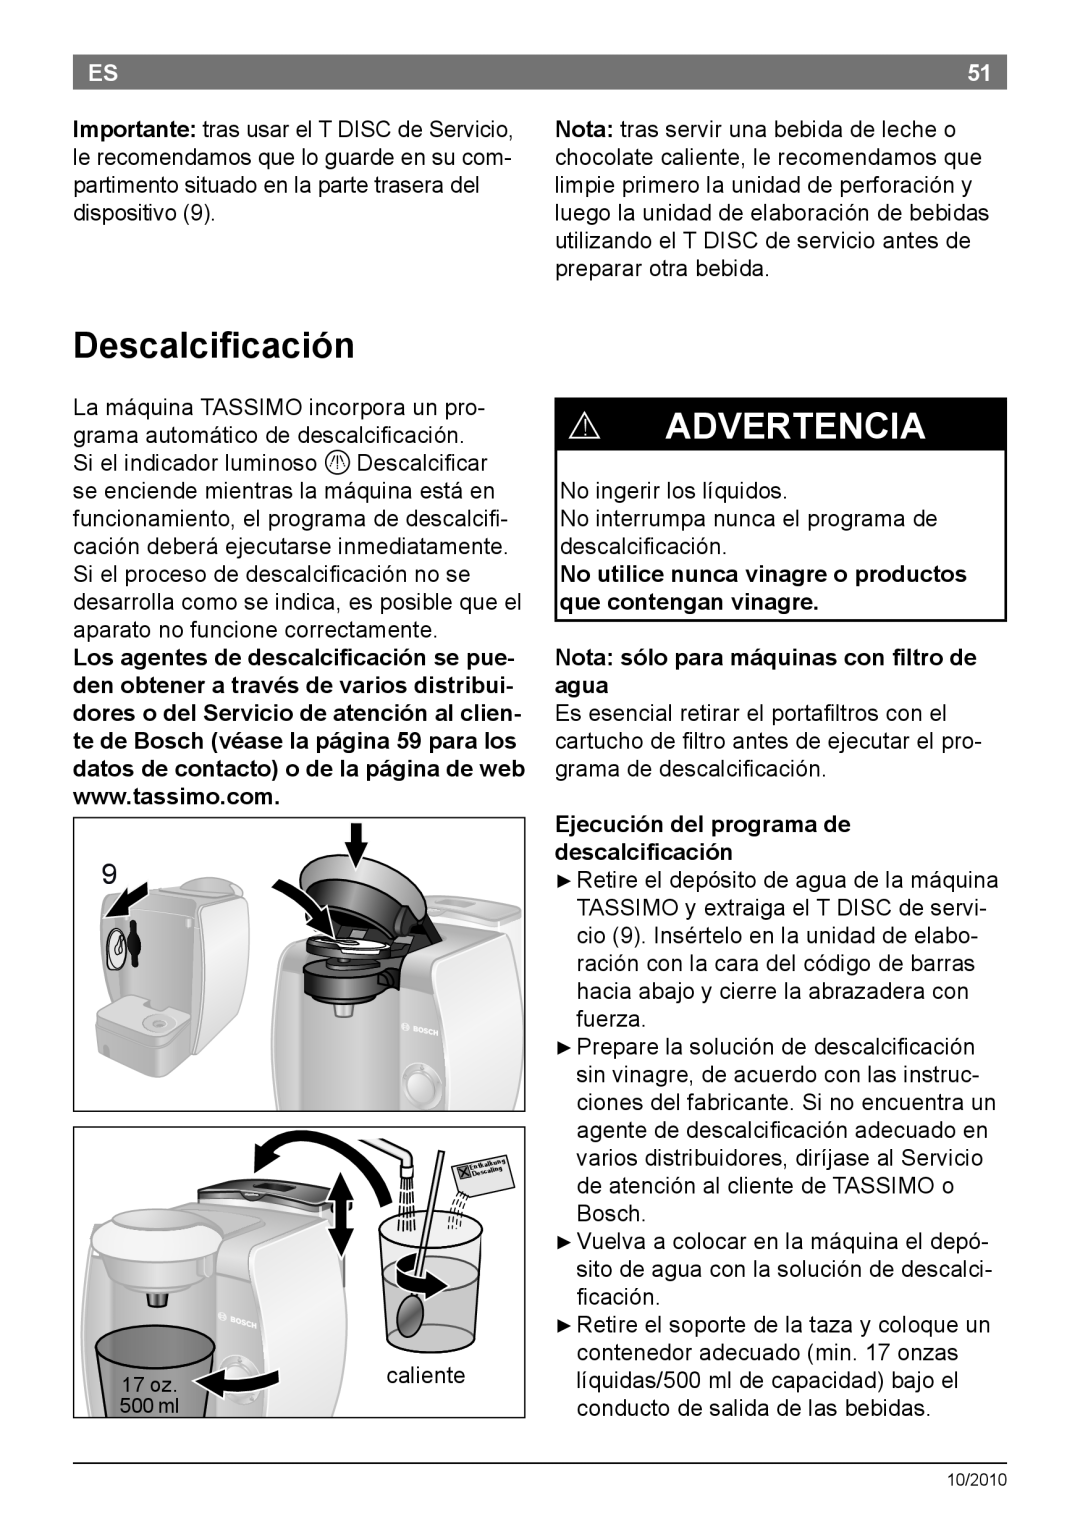 Bosch Appliances T45 Descalcificación, ! Advertencia, No utilice nunca vinagre o productos que contengan vinagre 